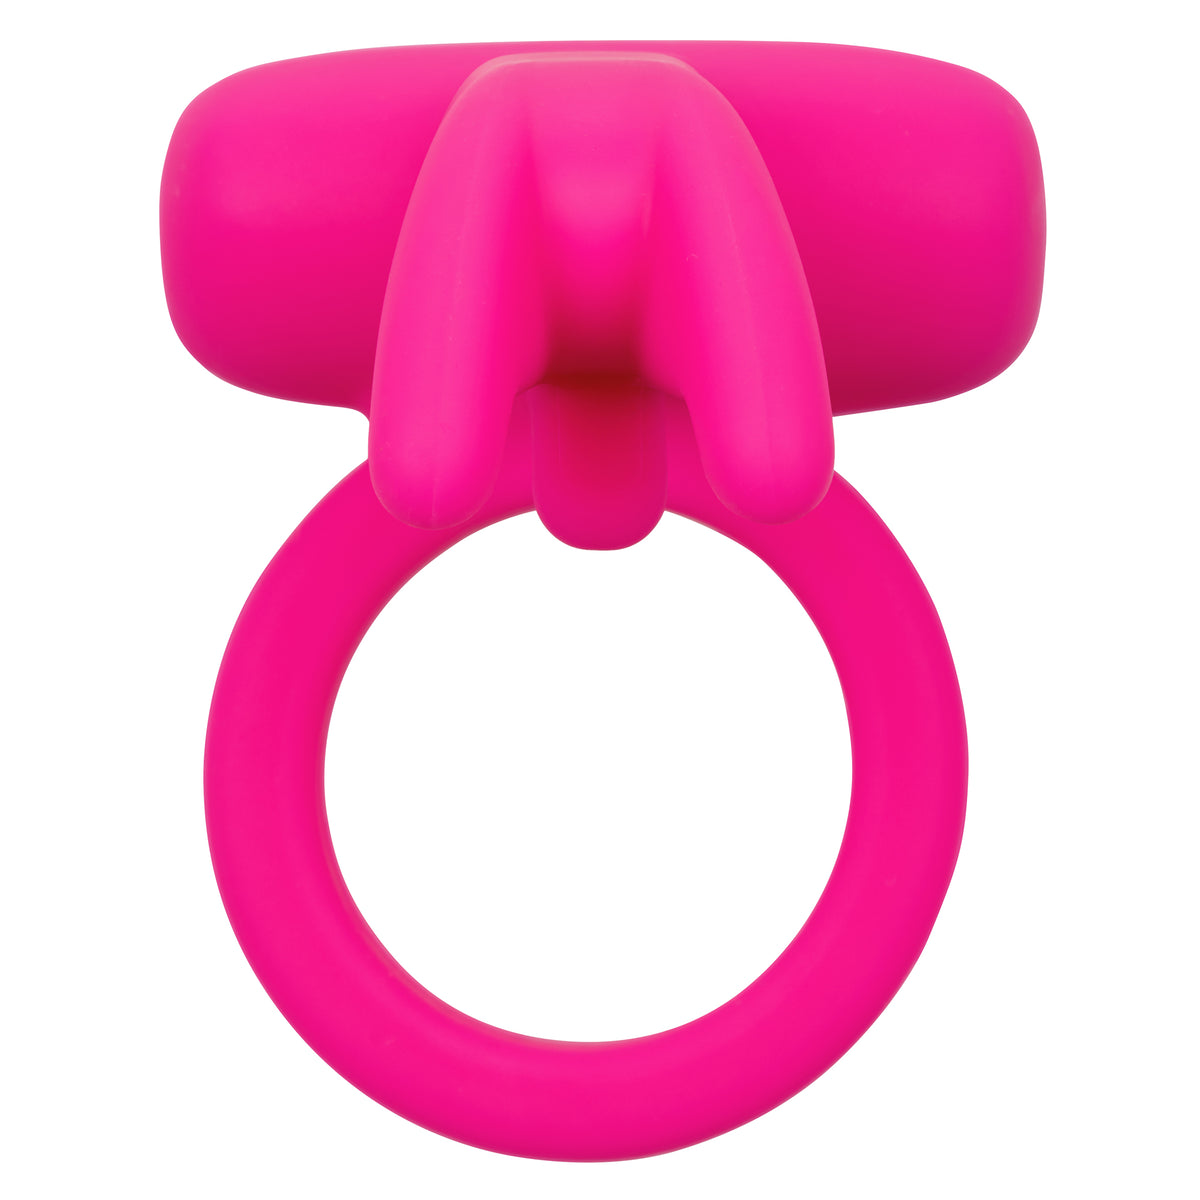 CalExotics Triple Clit Flicker - Vibrating Cock Ring - Pink